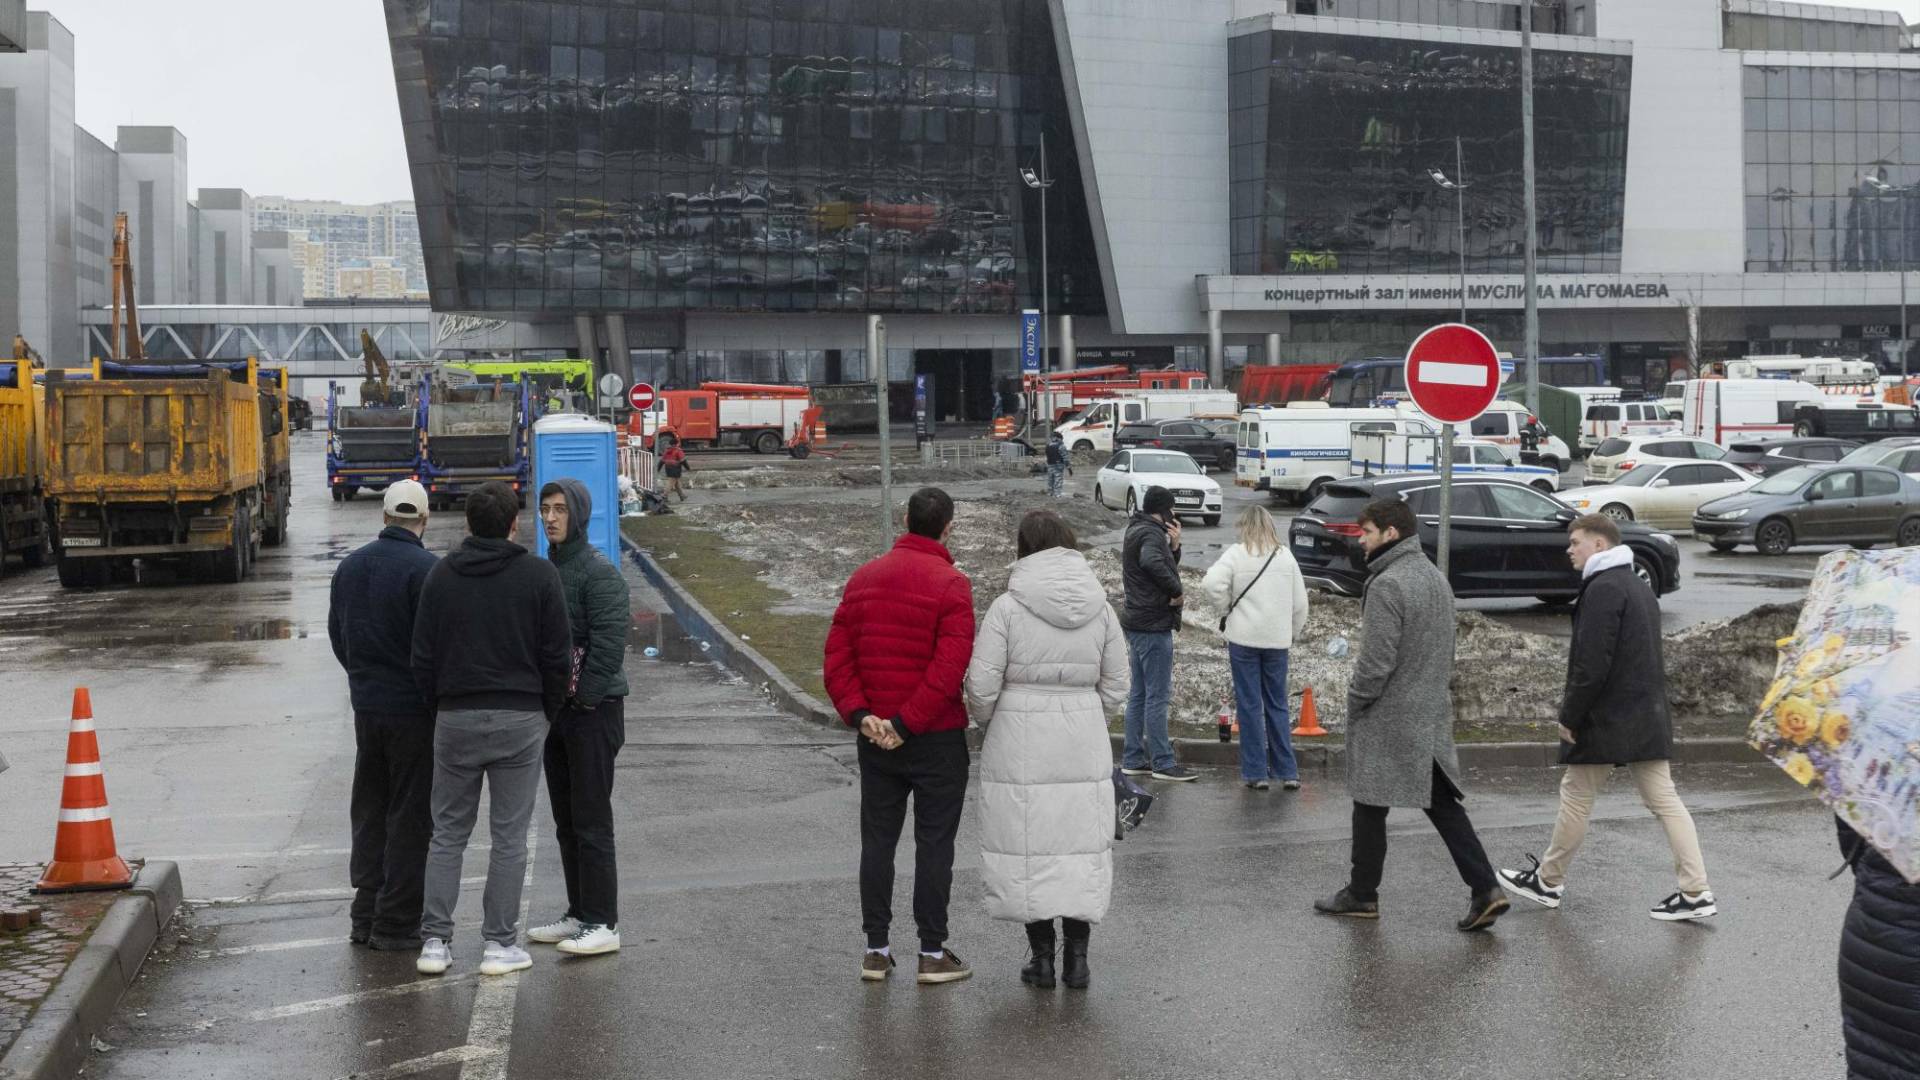 $!El Estado Islámico se atribuyó la responsabilidad del ataque mortal a una sala de conciertos en Moscú el 22 de marzo.